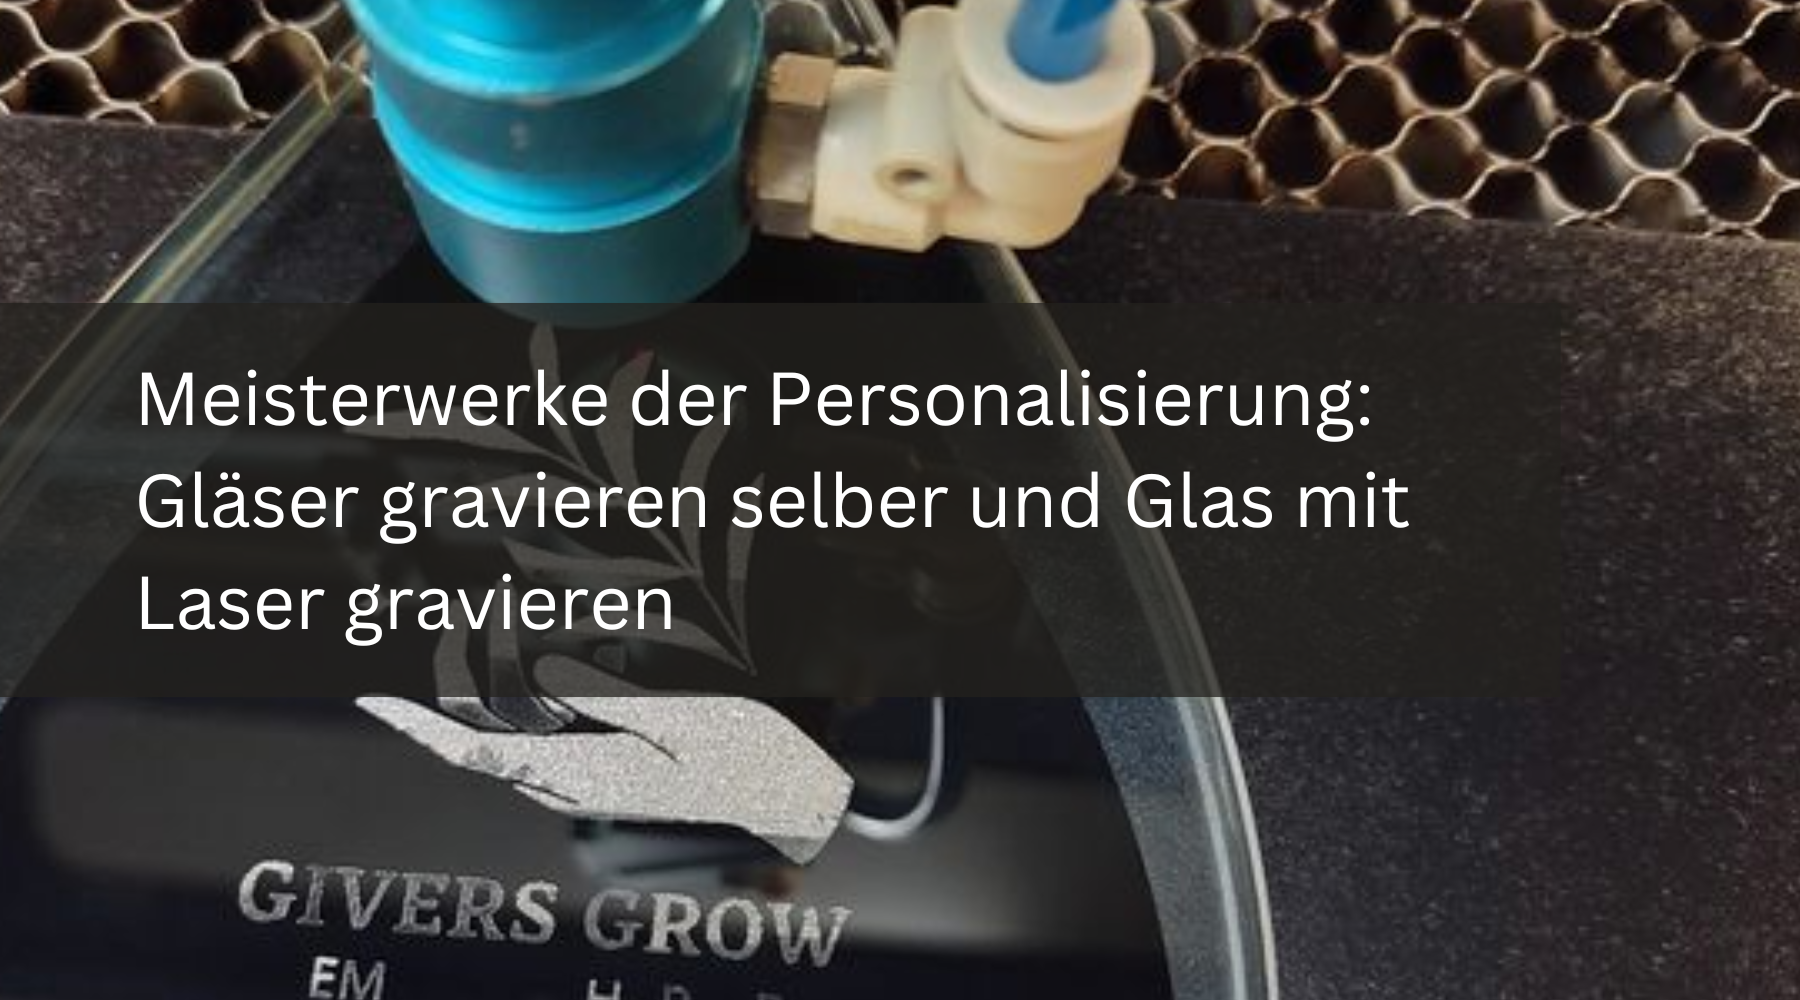 Meisterwerke der Personalisierung: Gläser gravieren selber und Glas mit Laser gravieren